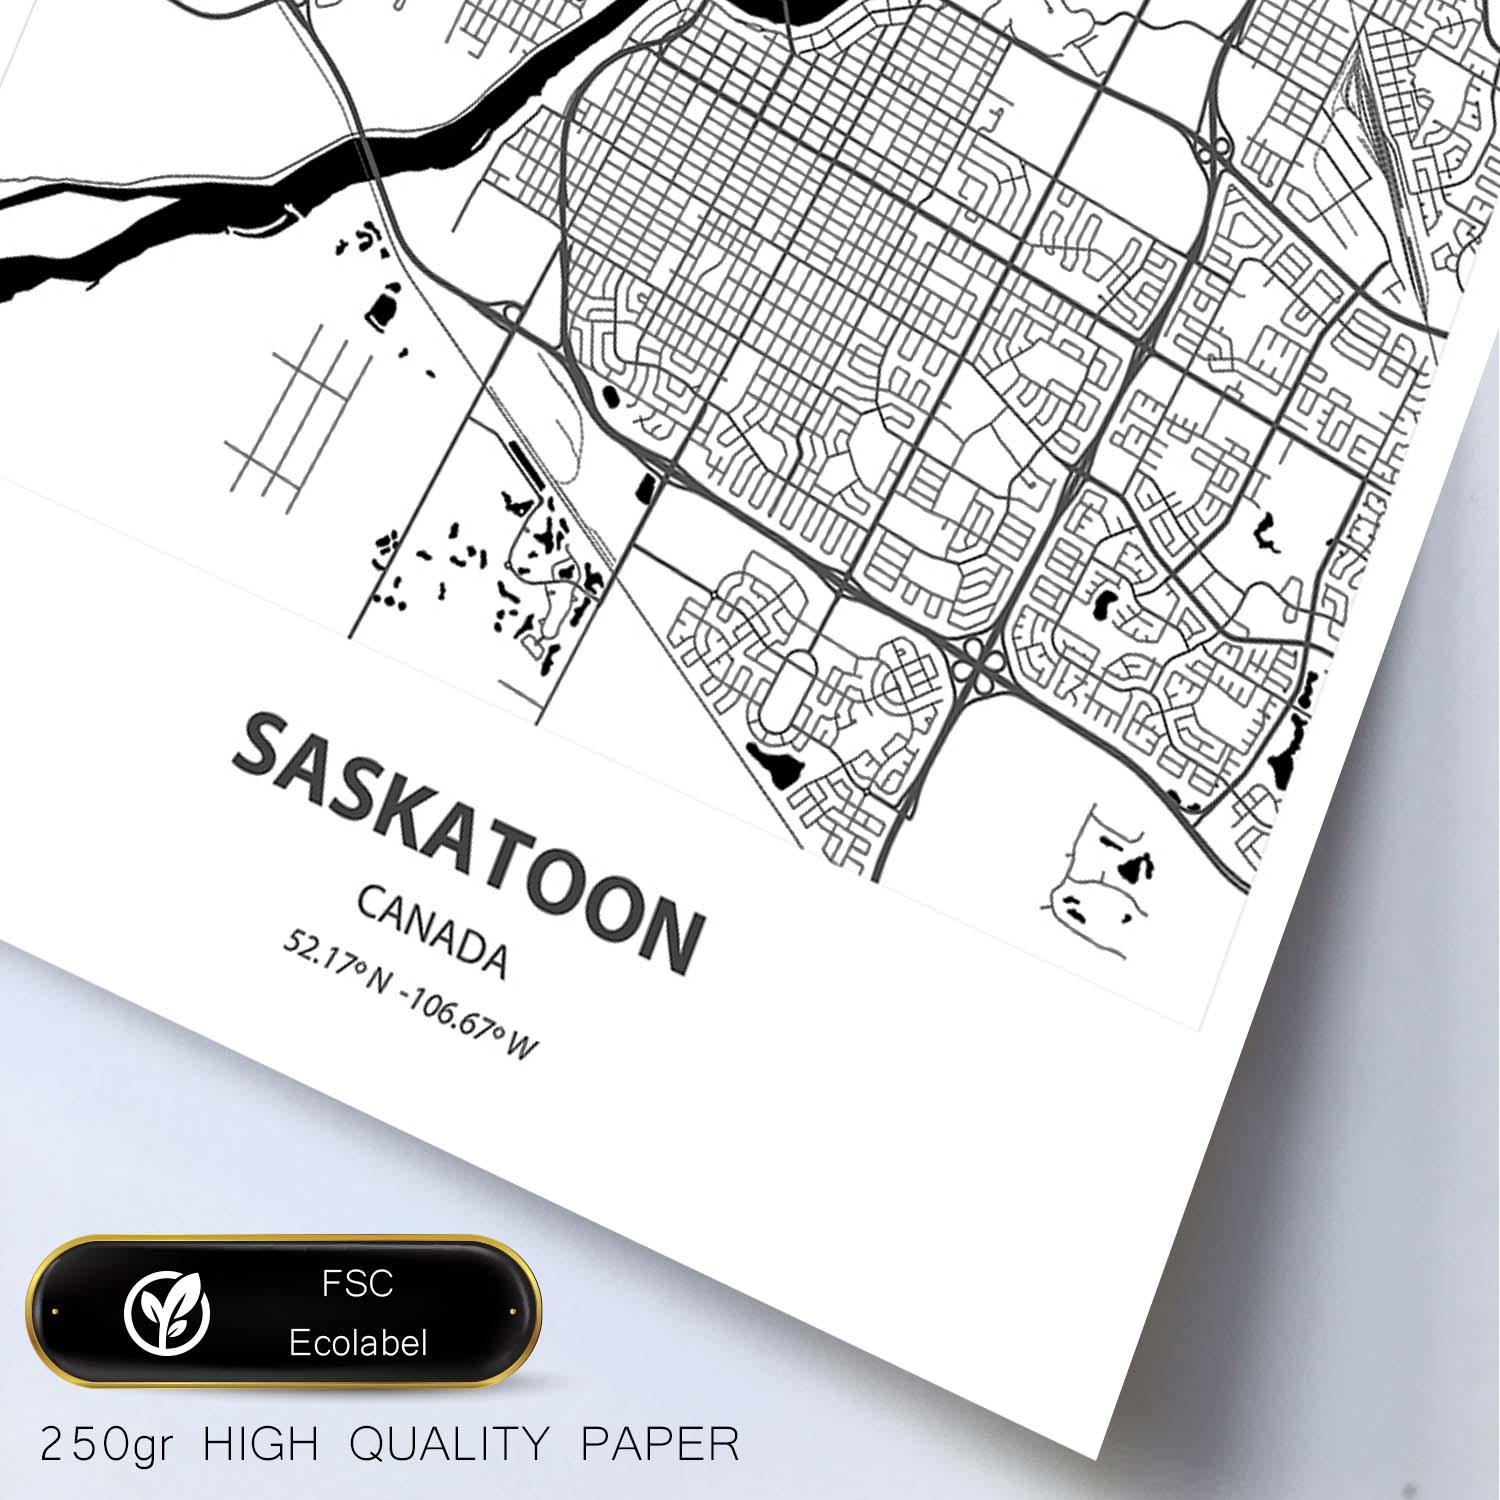 Poster con mapa de Saskatoon - Canada. Láminas de ciudades de Canada con mares y ríos en color negro.-Artwork-Nacnic-Nacnic Estudio SL